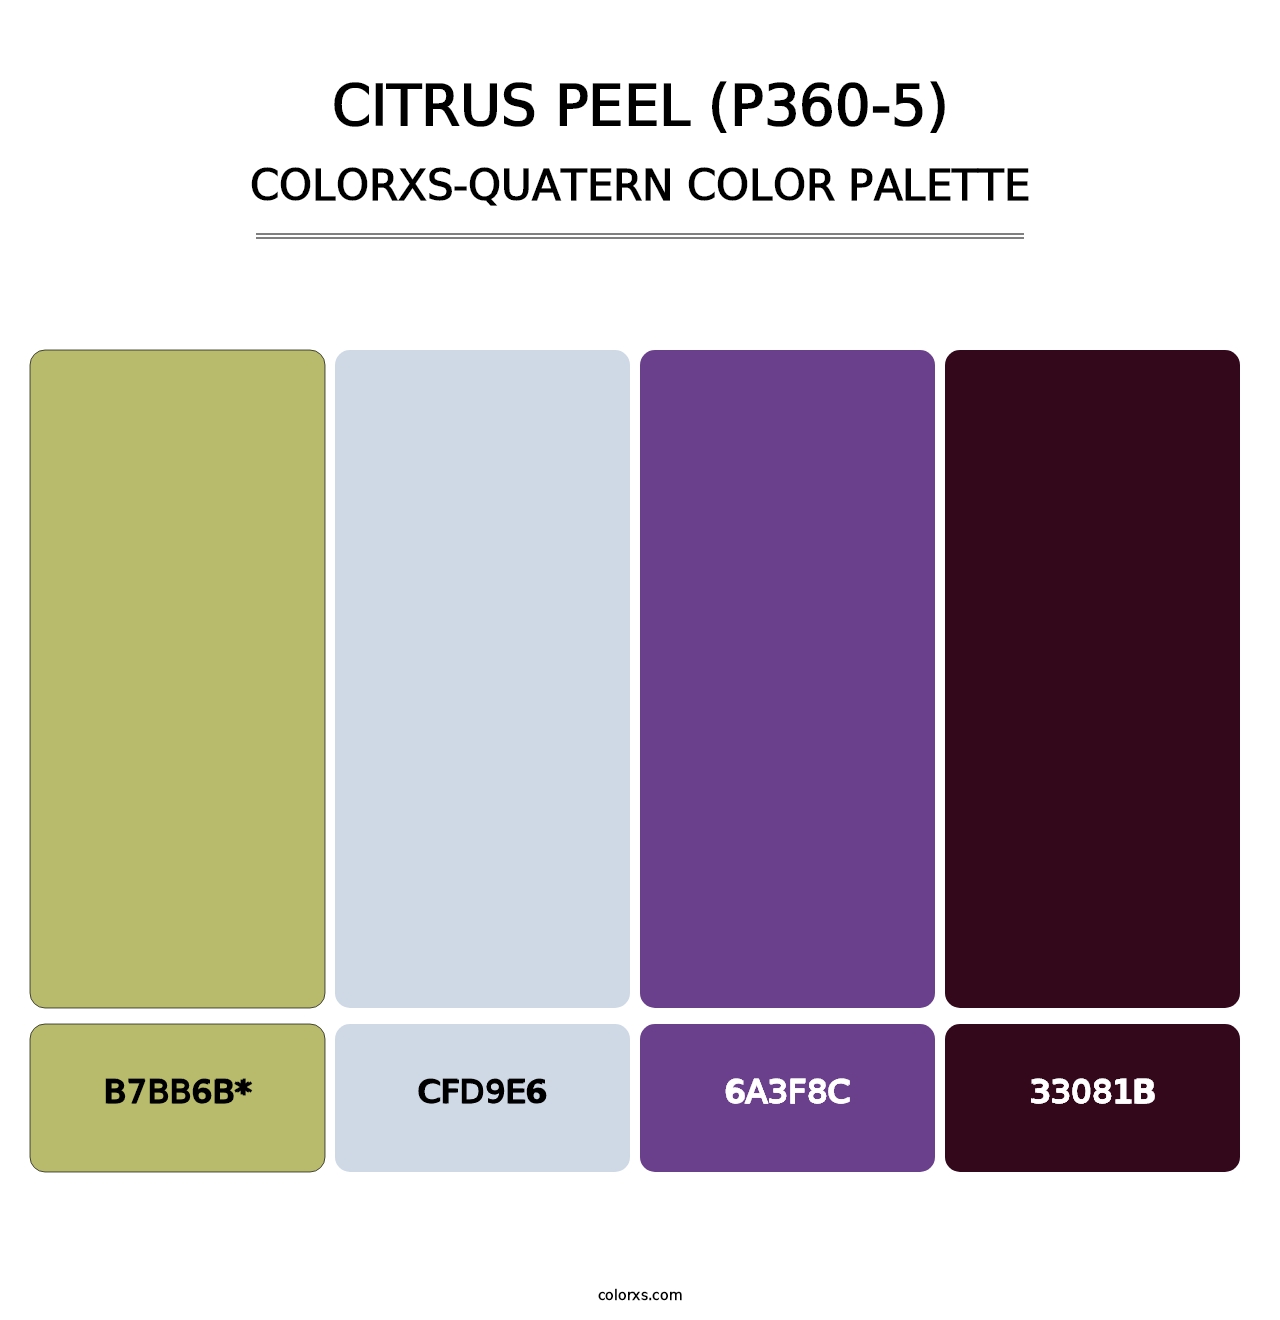 Citrus Peel (P360-5) - Colorxs Quatern Palette